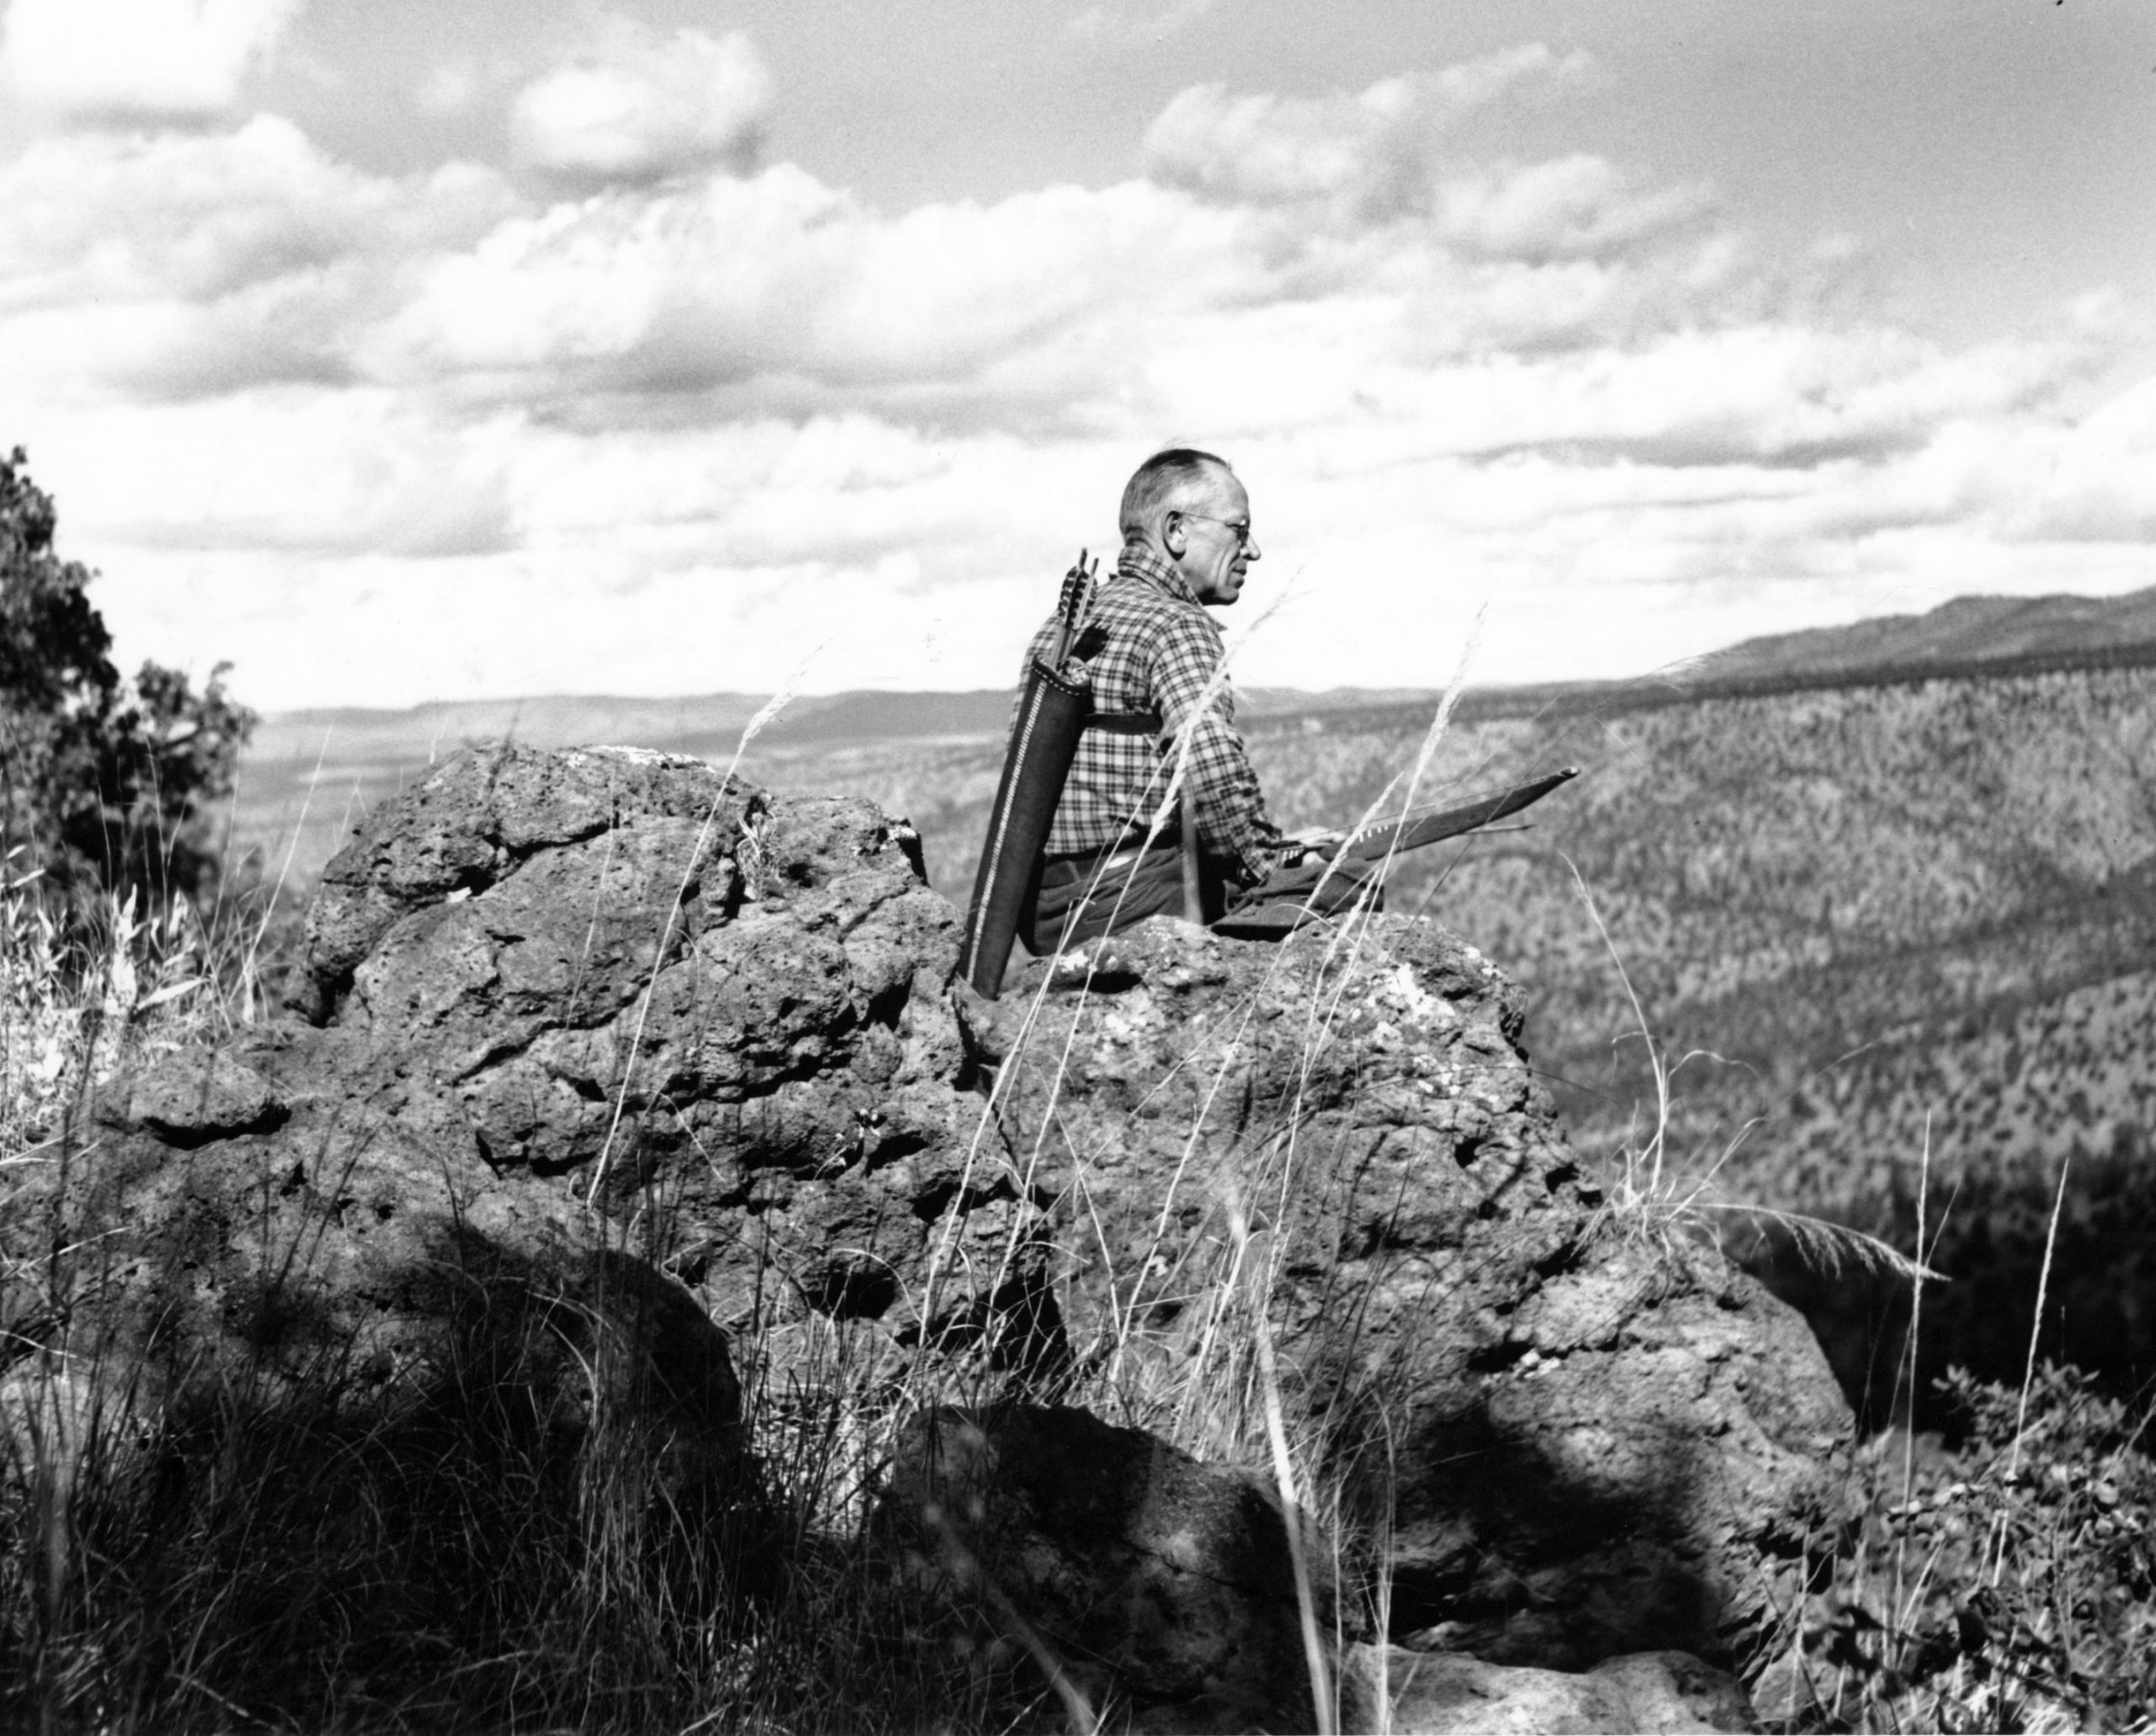 Aldo Leopold on rocky terrain looking over Sierra Madre